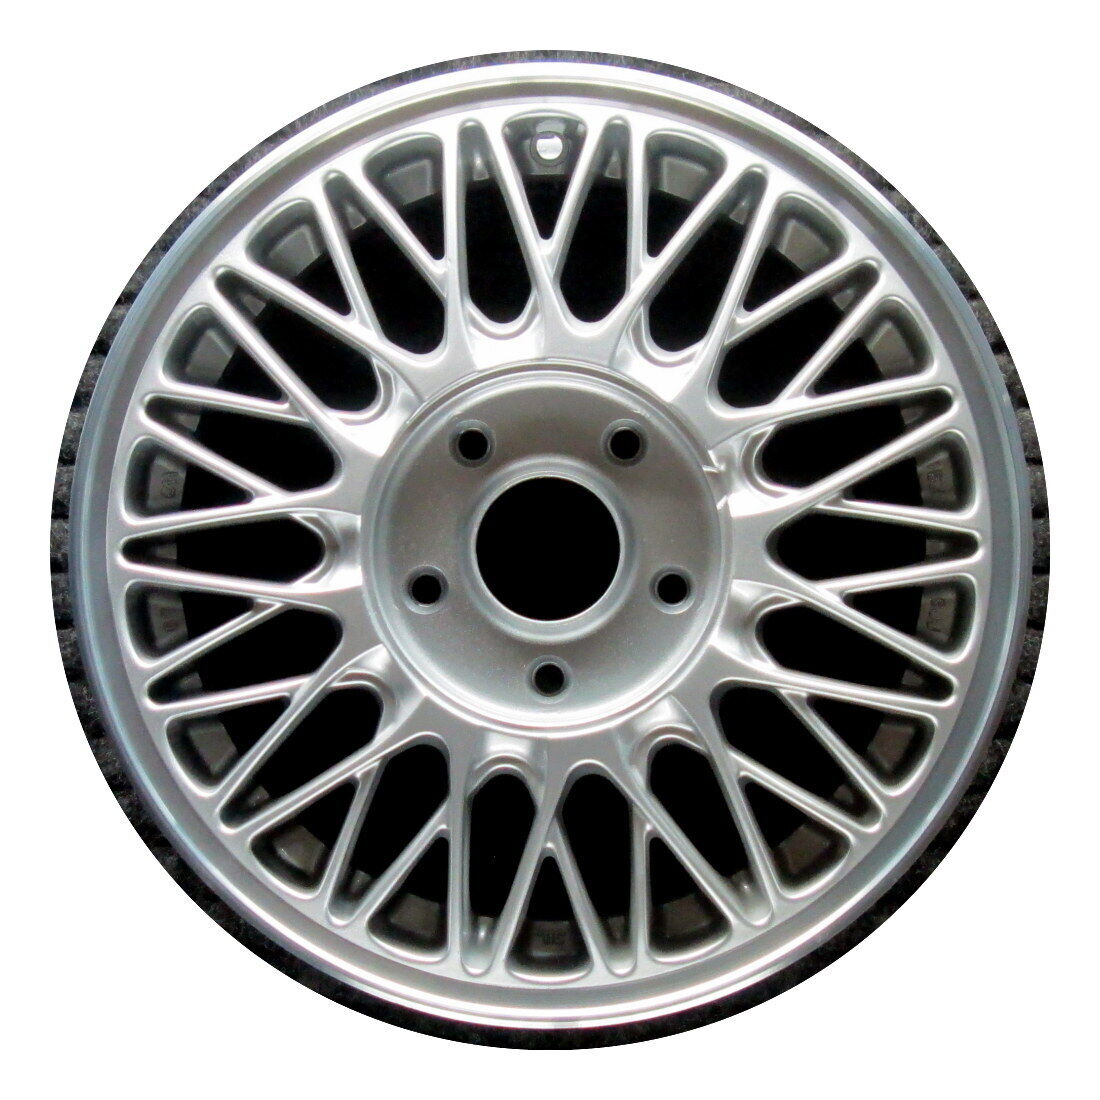 Wheel Rim Mazda 929 15 1992-1995 9965786050 996578605 8BHJ37600 OEM OE 64733